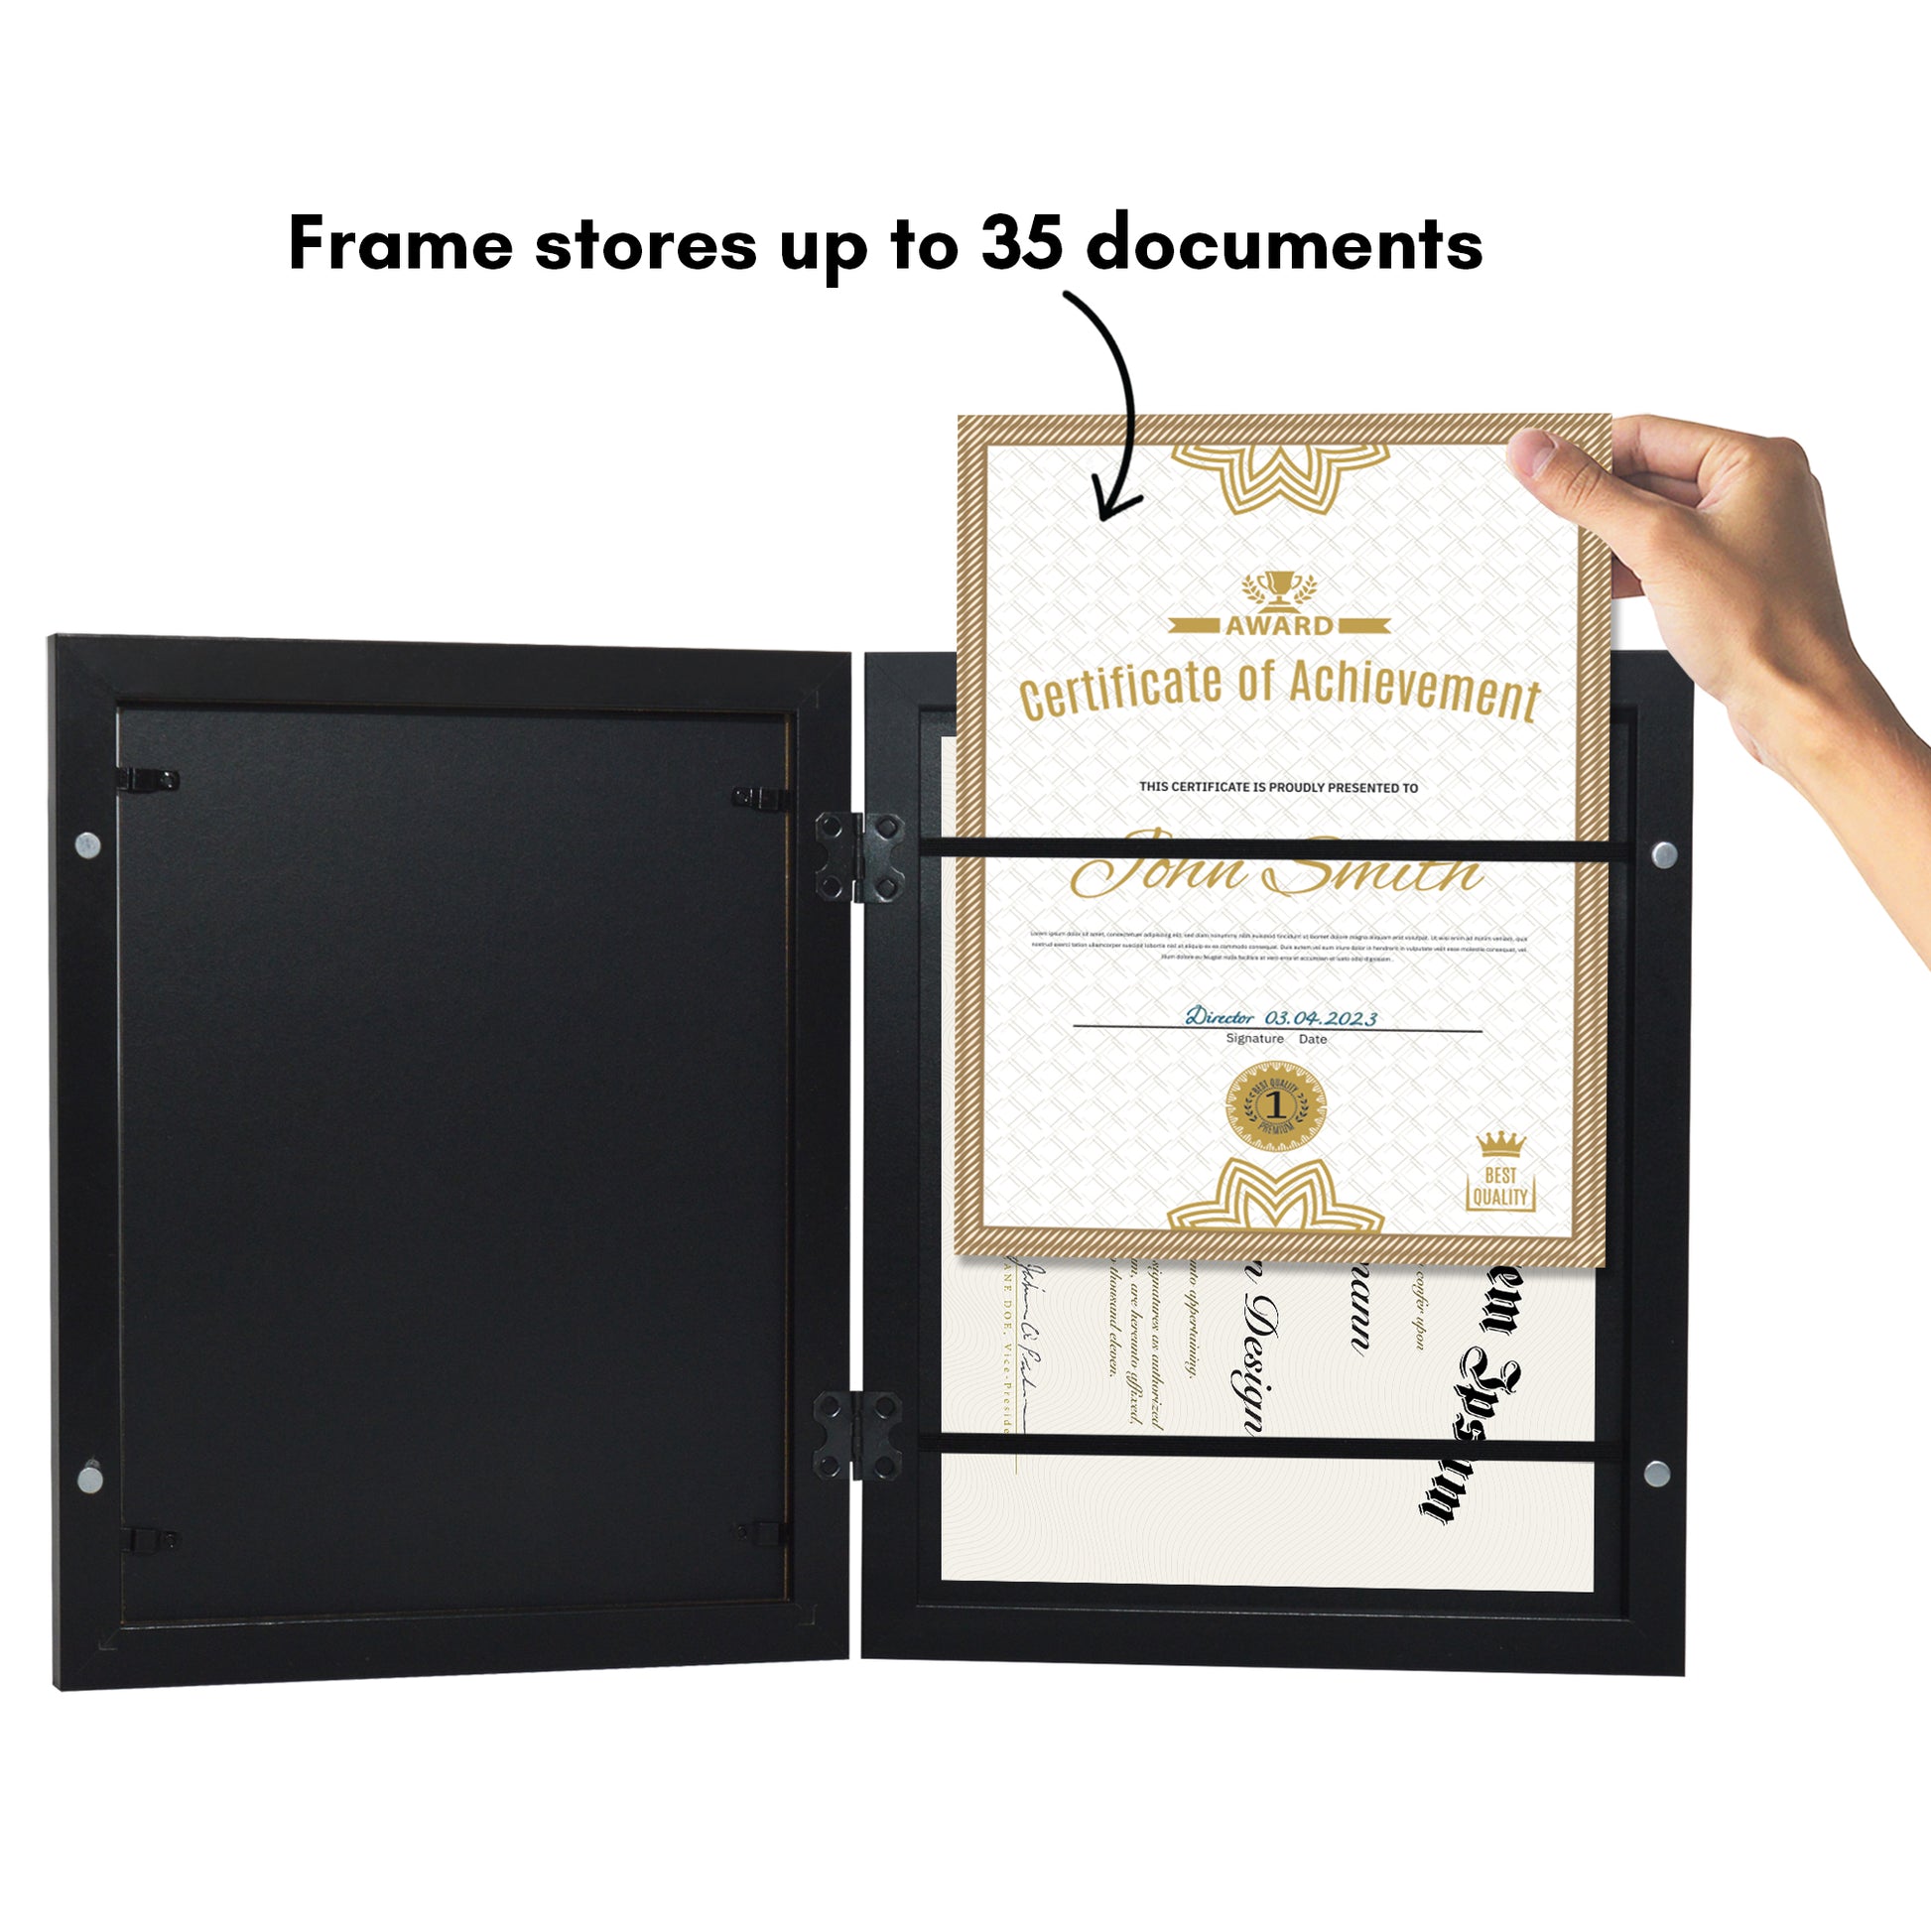 Full Color Black Certificate Holder (Holds 8.5 x 11) - Graduation Ink